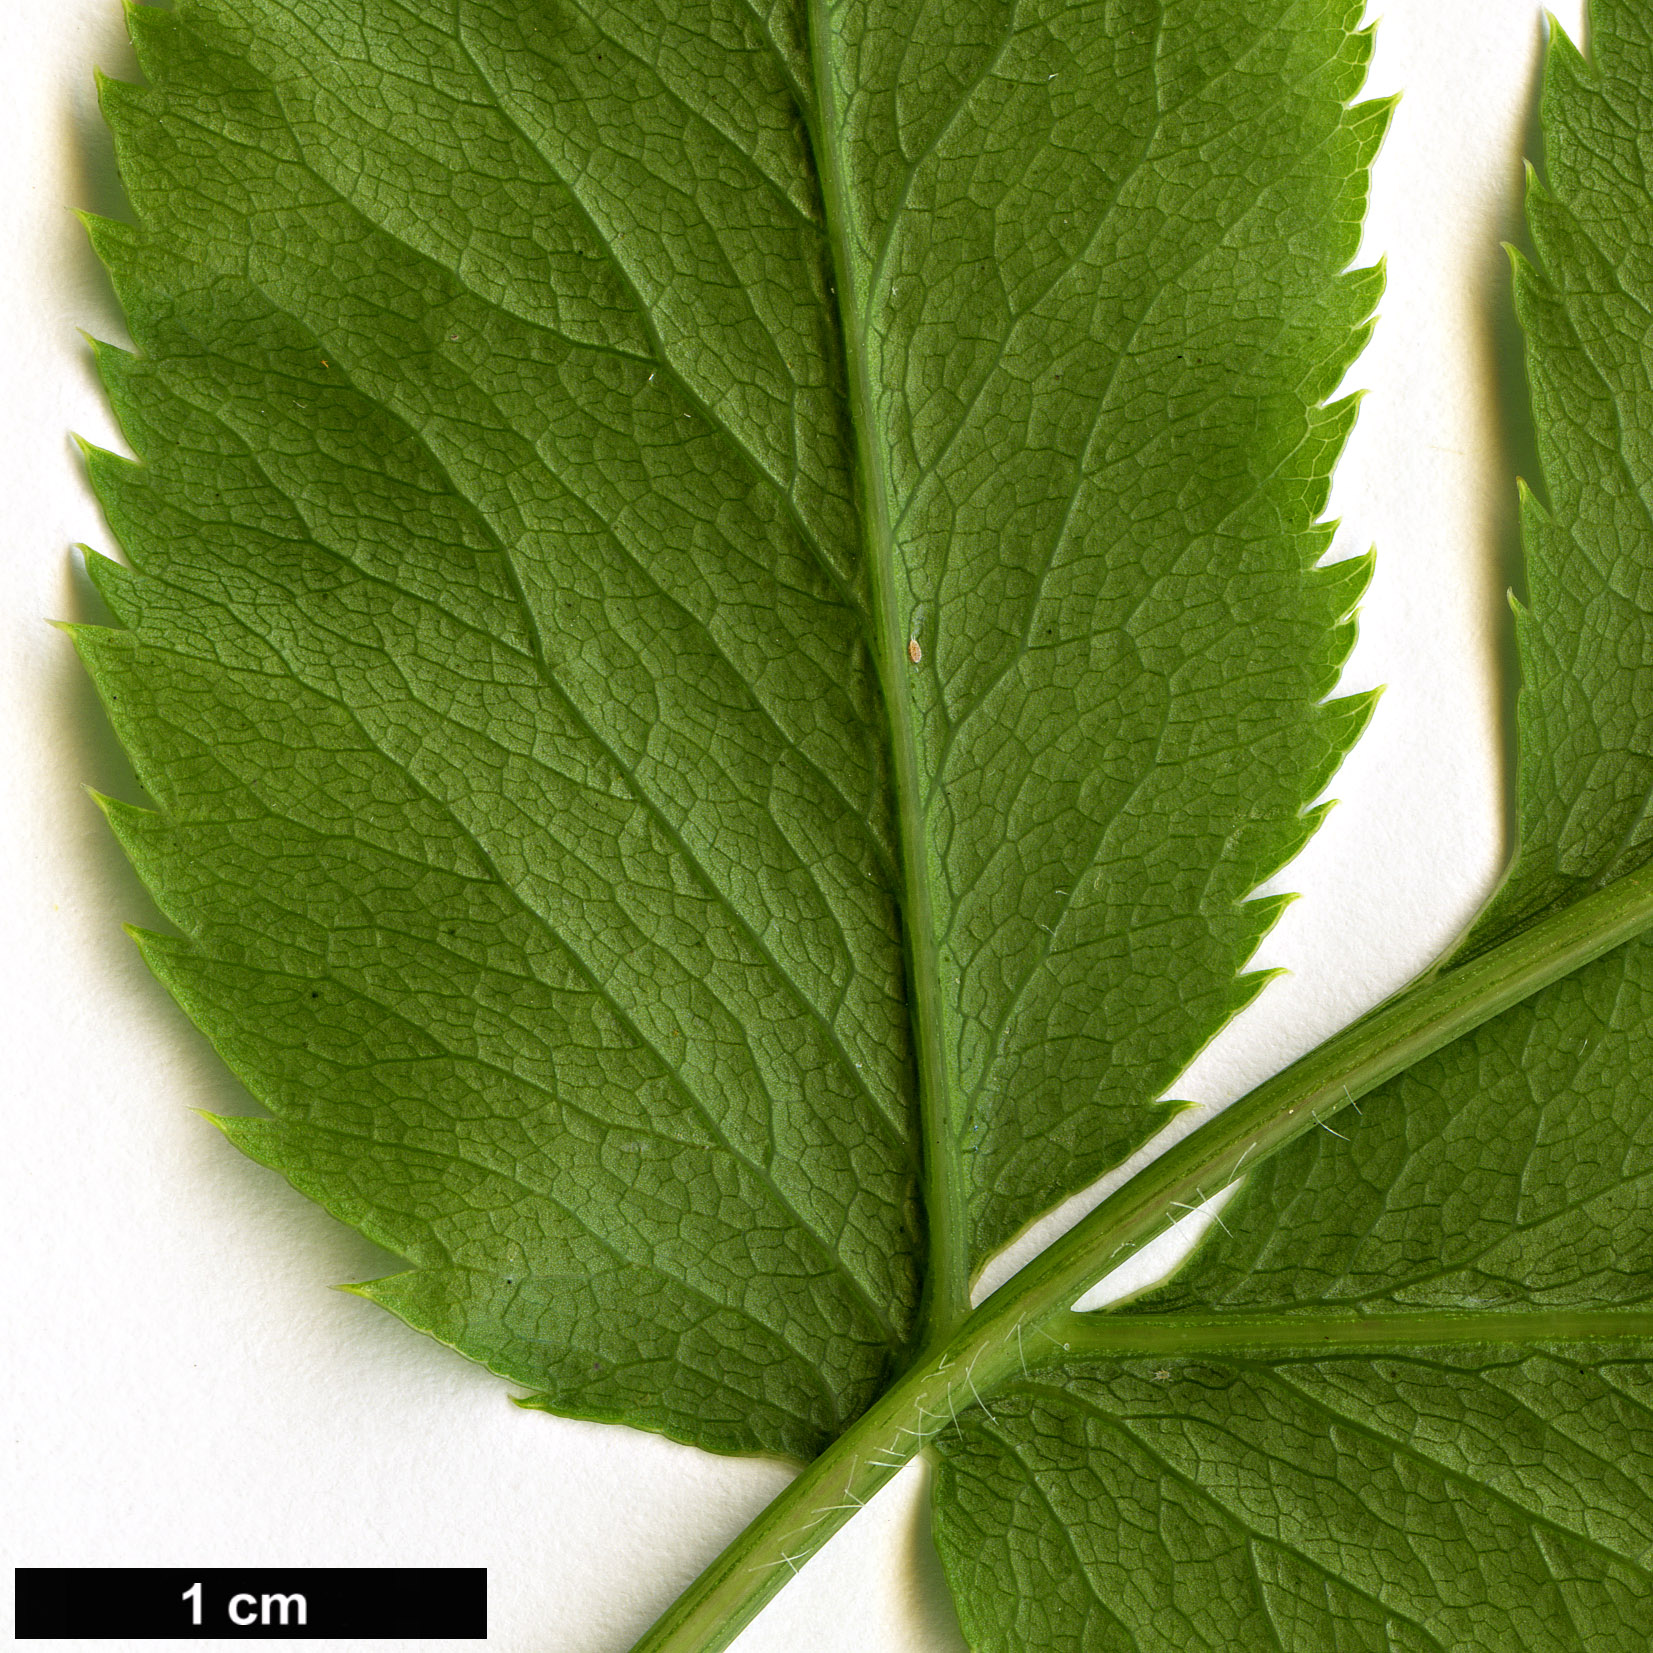 High resolution image: Family: Apiaceae - Genus: Melanoselinum - Taxon: decipiens